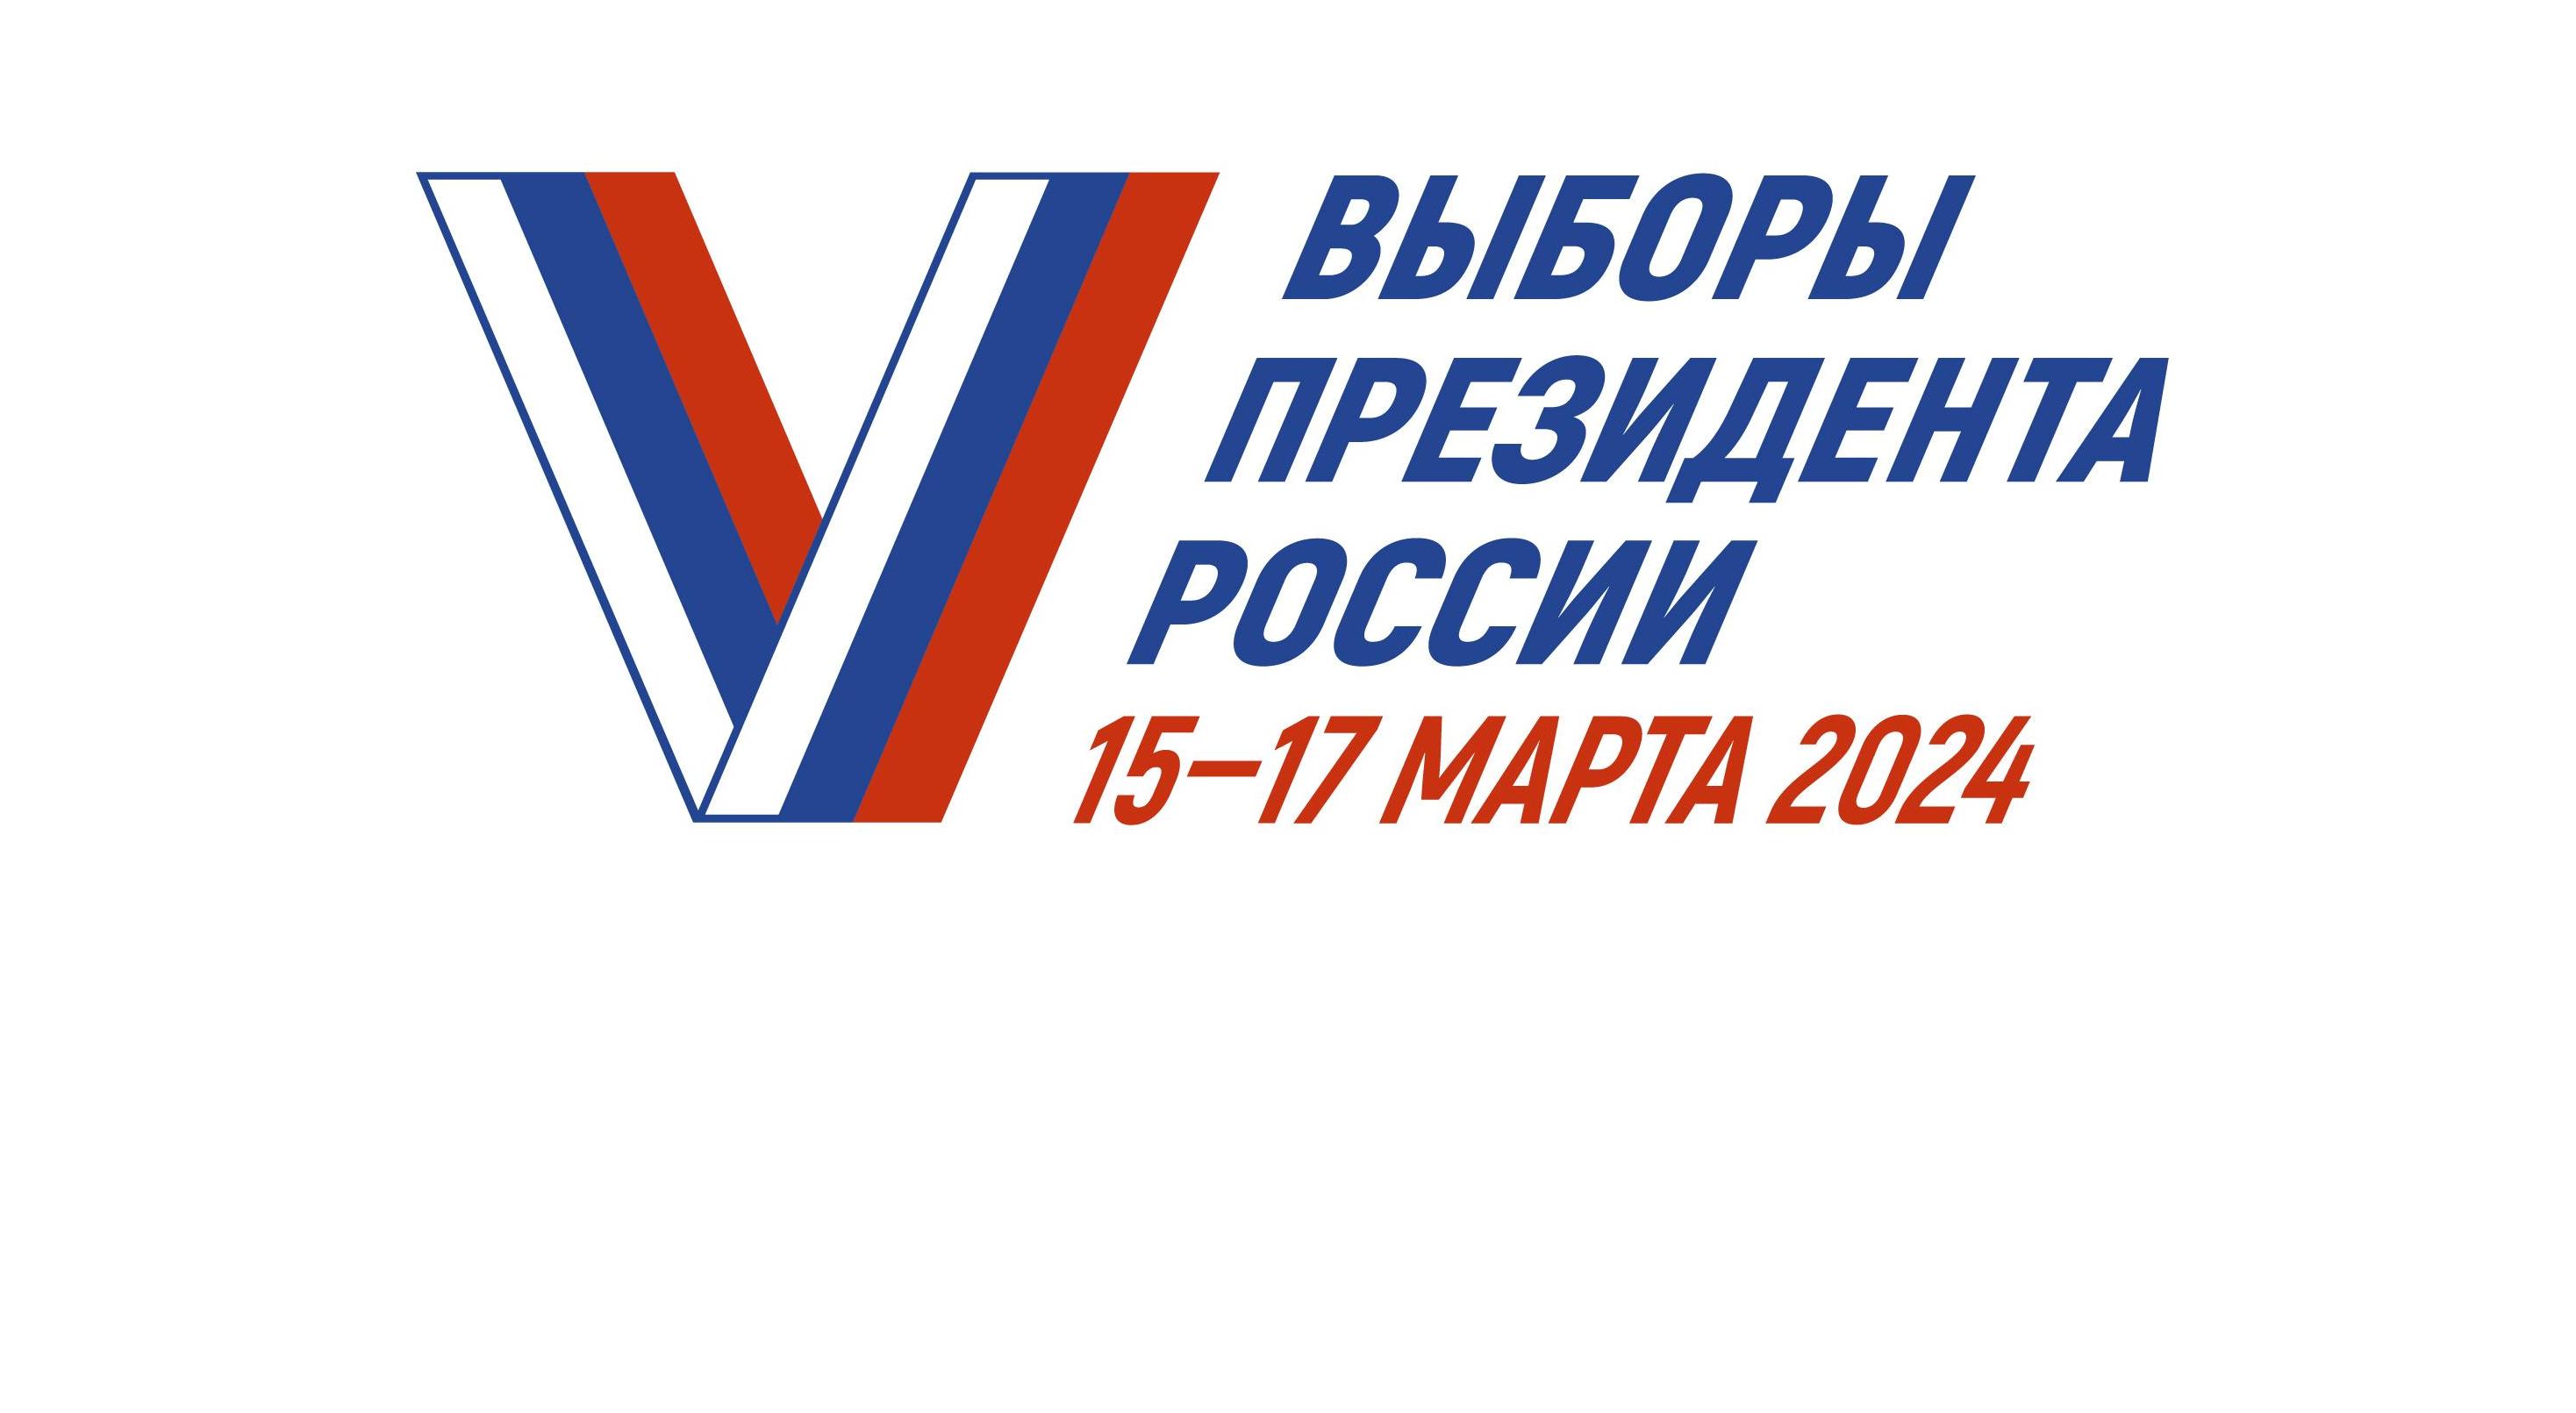 Выборы Президента РФ пройдут 15-17 марта 2024 года